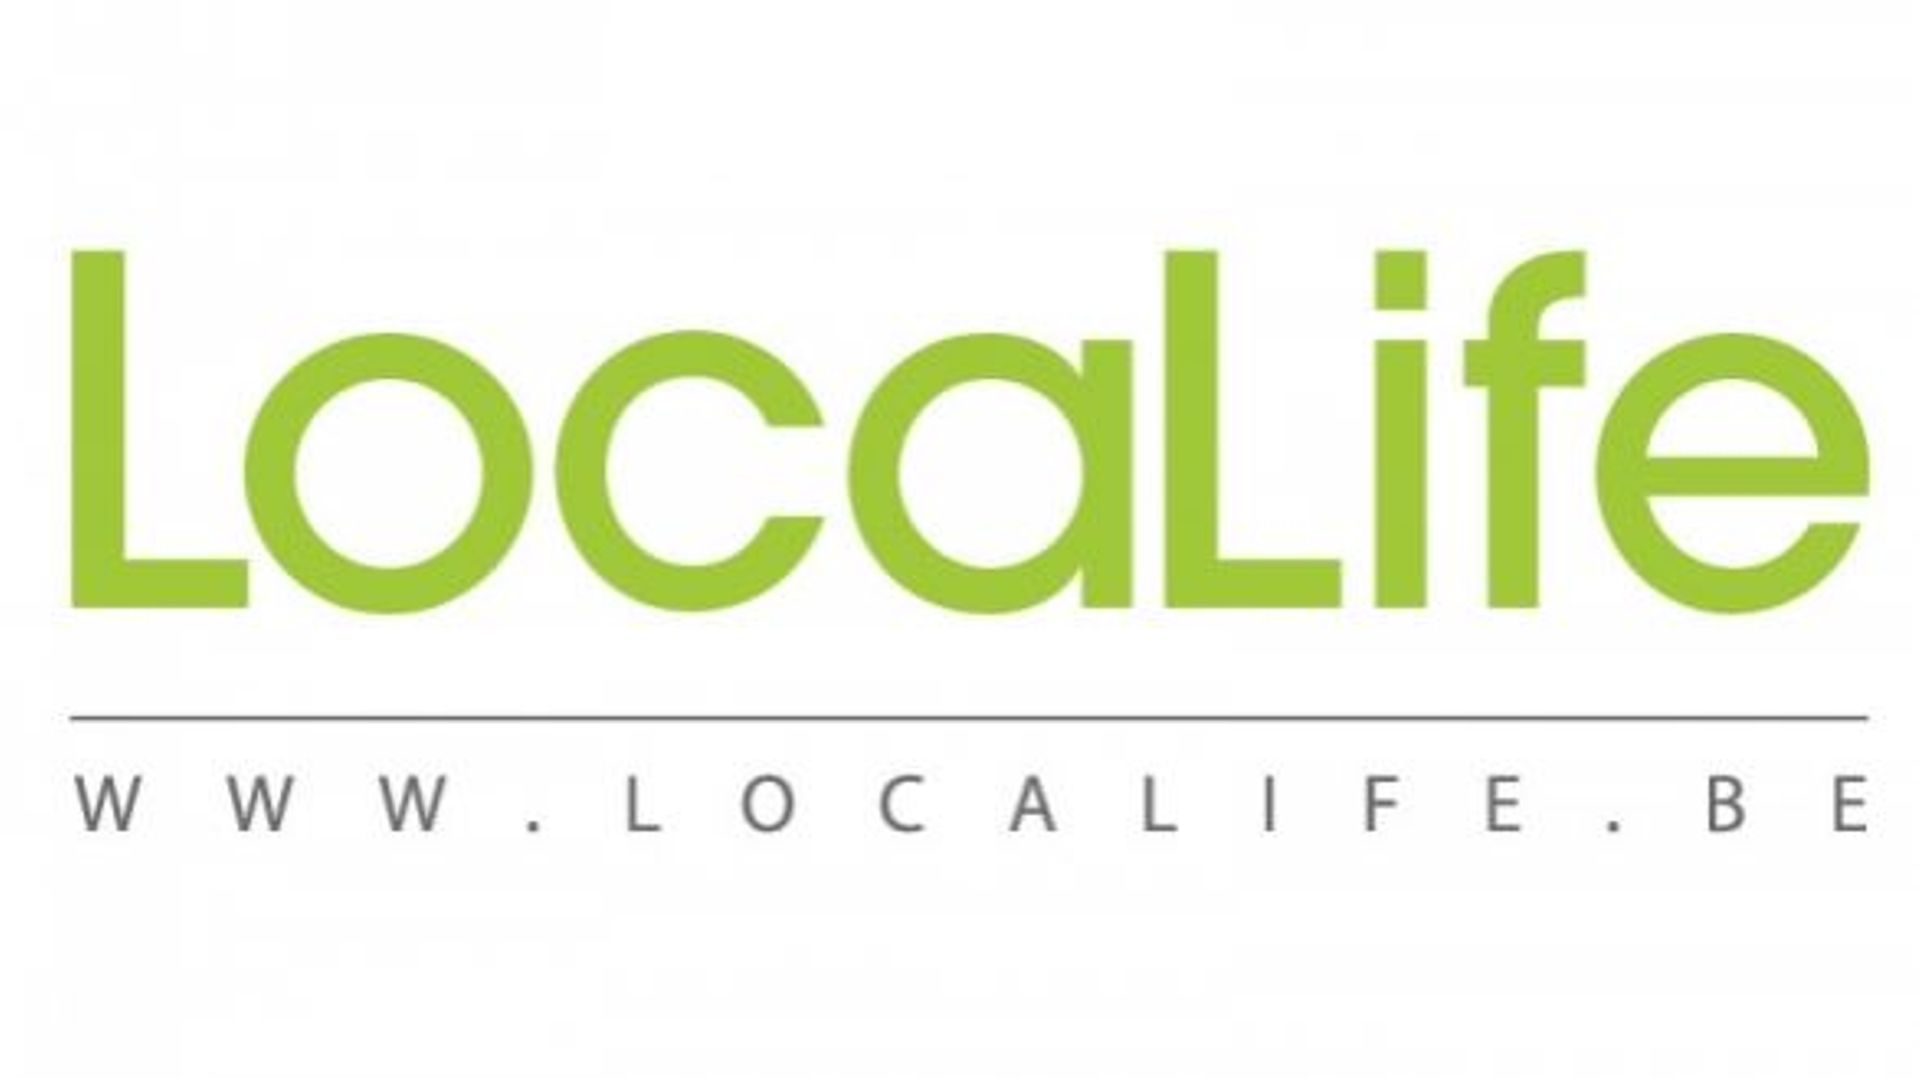 Locallife.be le catalogue des producteurs locaux et artisans près de chez vous.